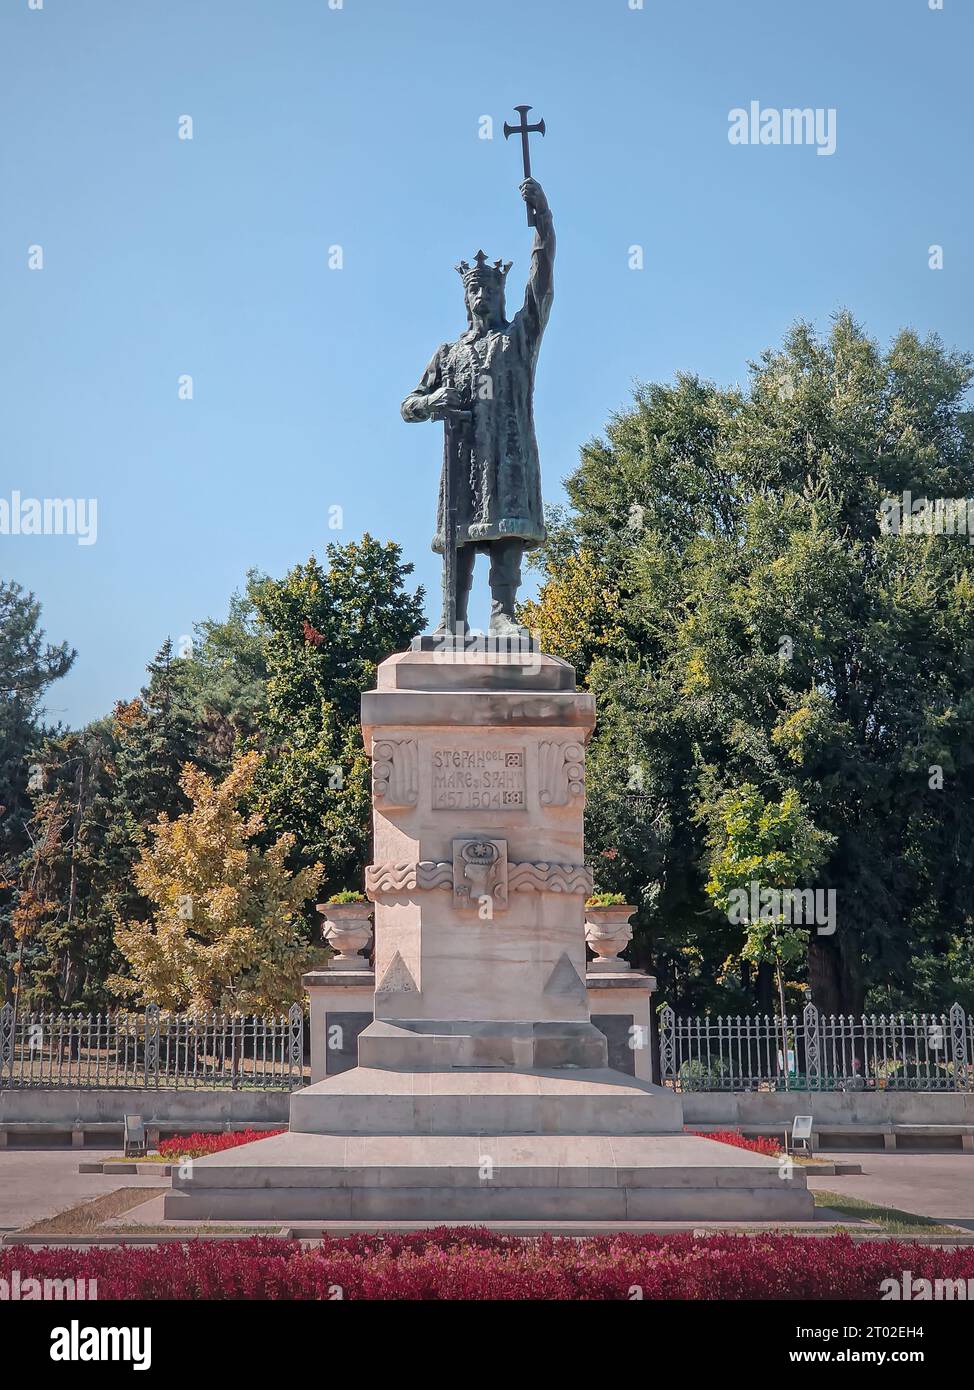 Stephen le Grand (Stefan cel Mare) monument en face du parc central dans une journée ensoleillée d'automne, ville de Chisinau, Moldavie Banque D'Images